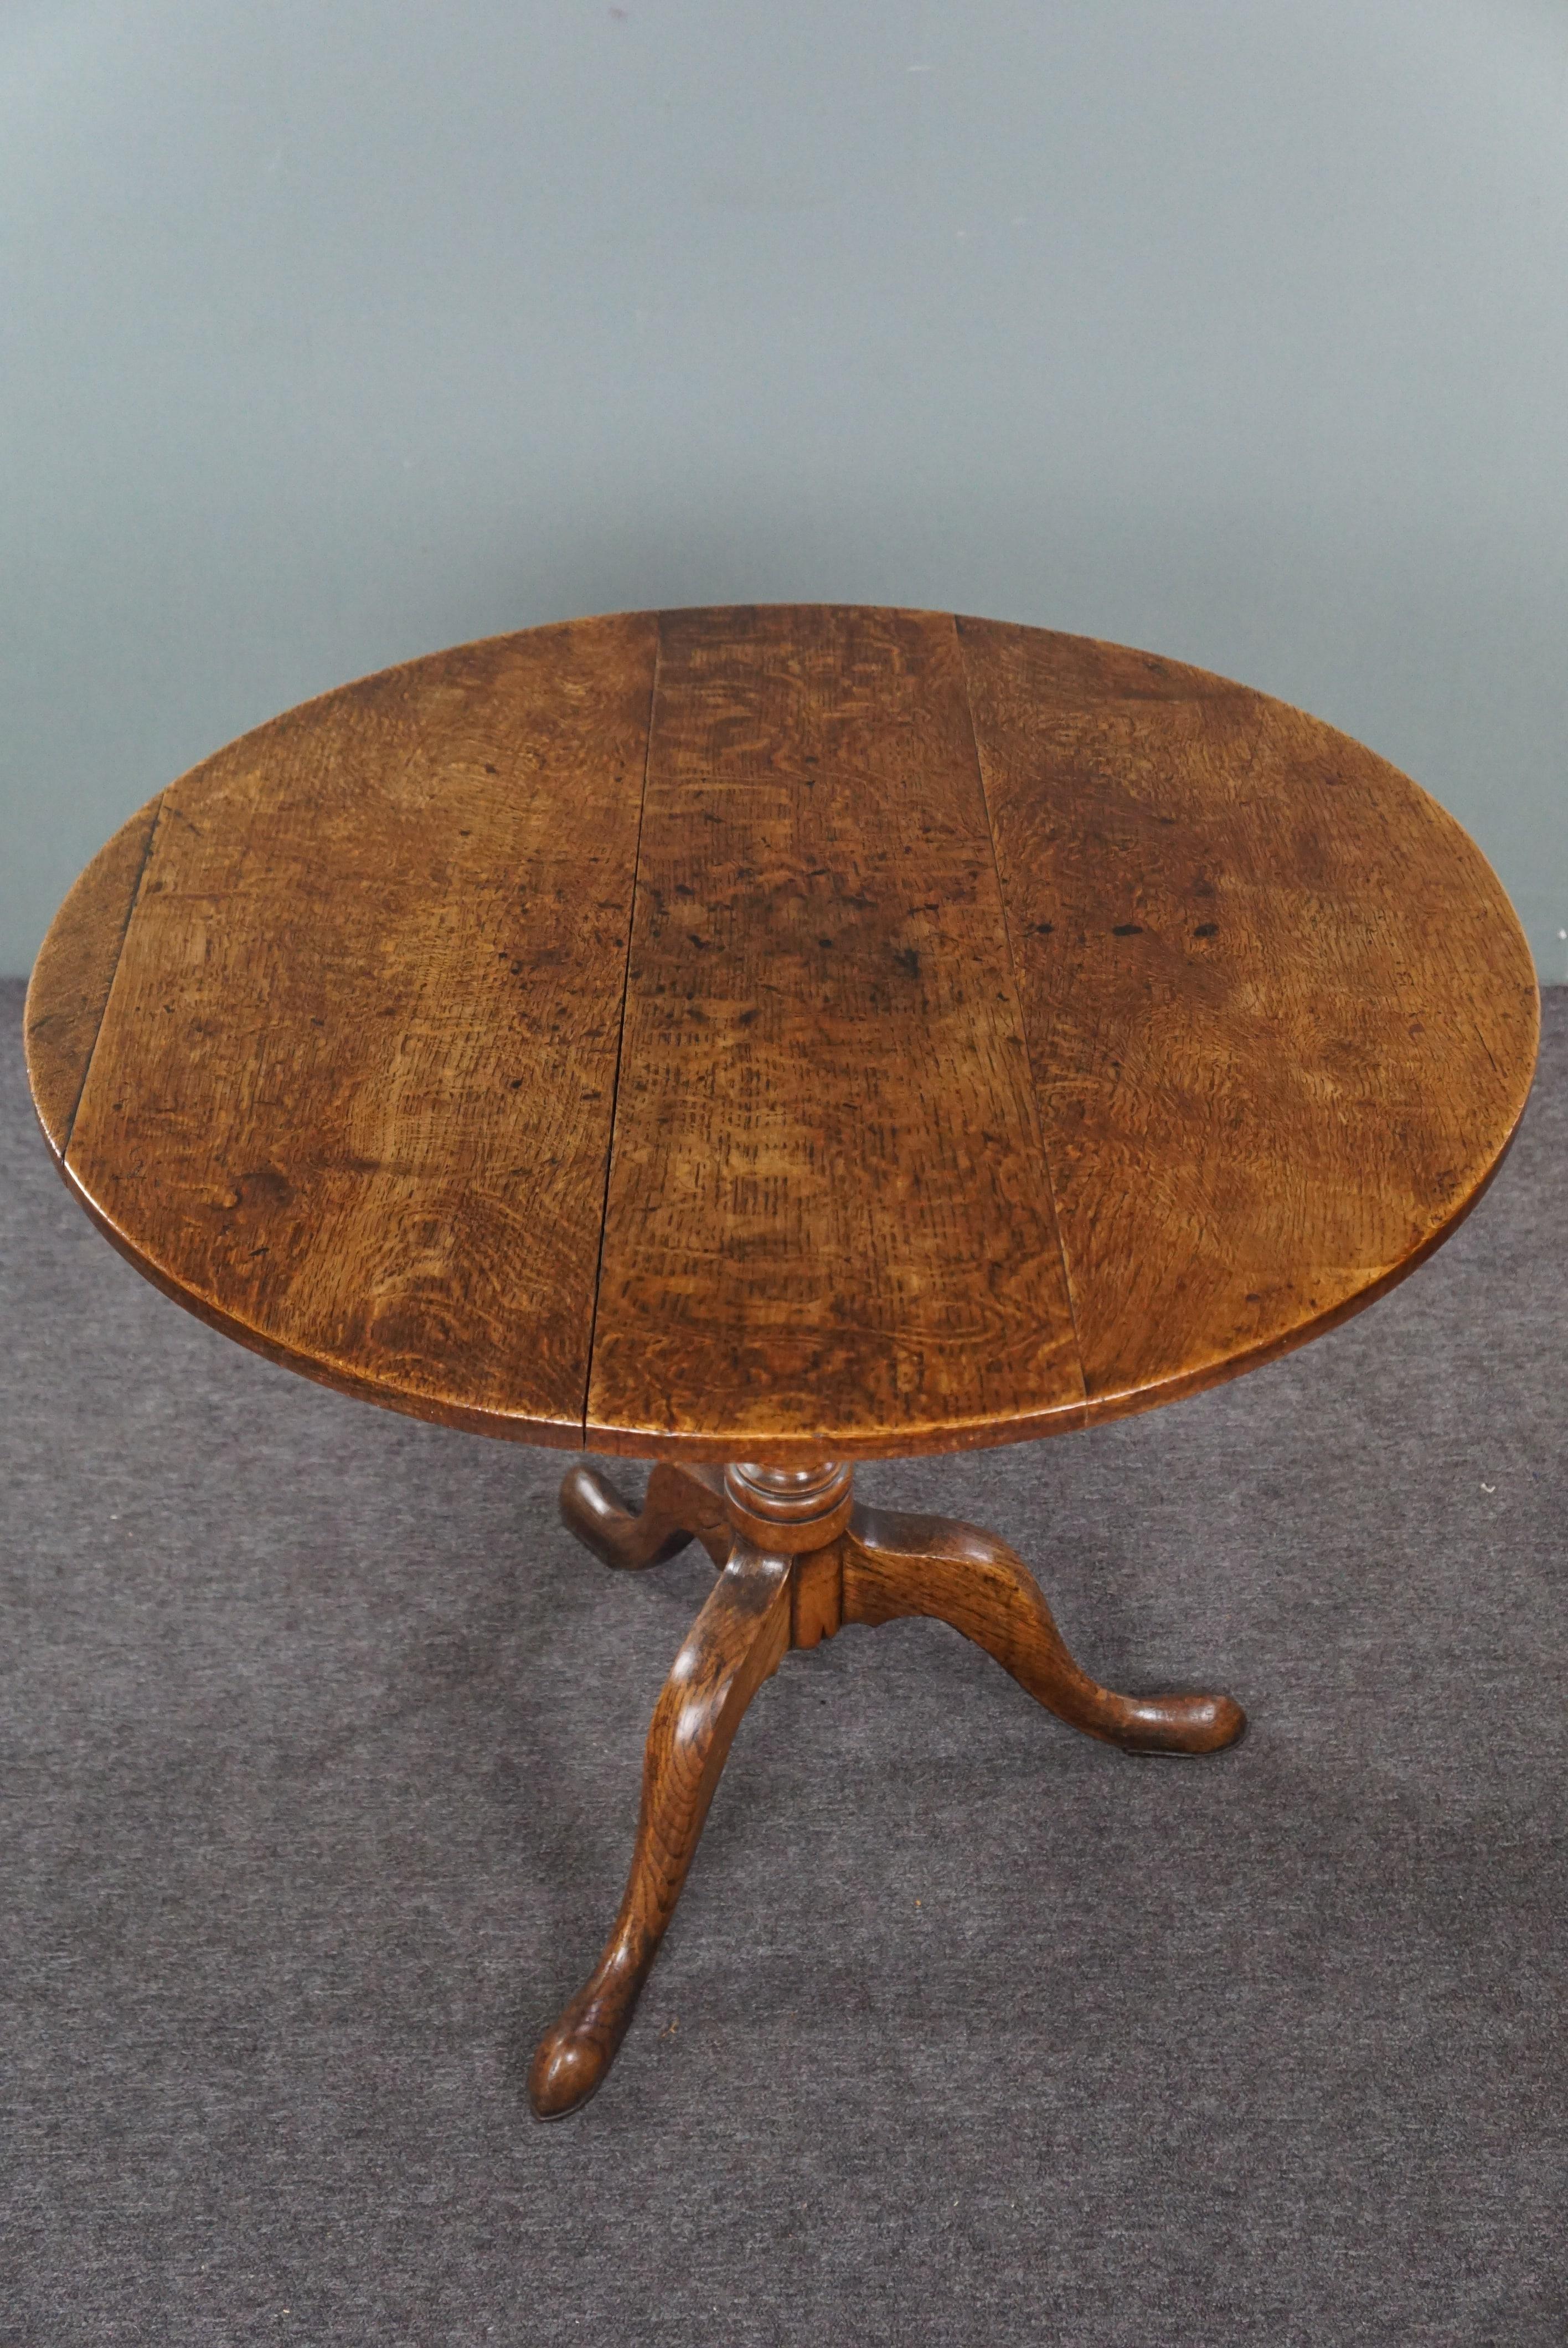 Cette magnifique table à plateau basculant en chêne anglais du XVIIIe siècle est offerte avec des couleurs chaudes. Cette magnifique grande table anglaise à plateau basculant est en bon état. Grâce à son mécanisme de pliage, il est facile à replier